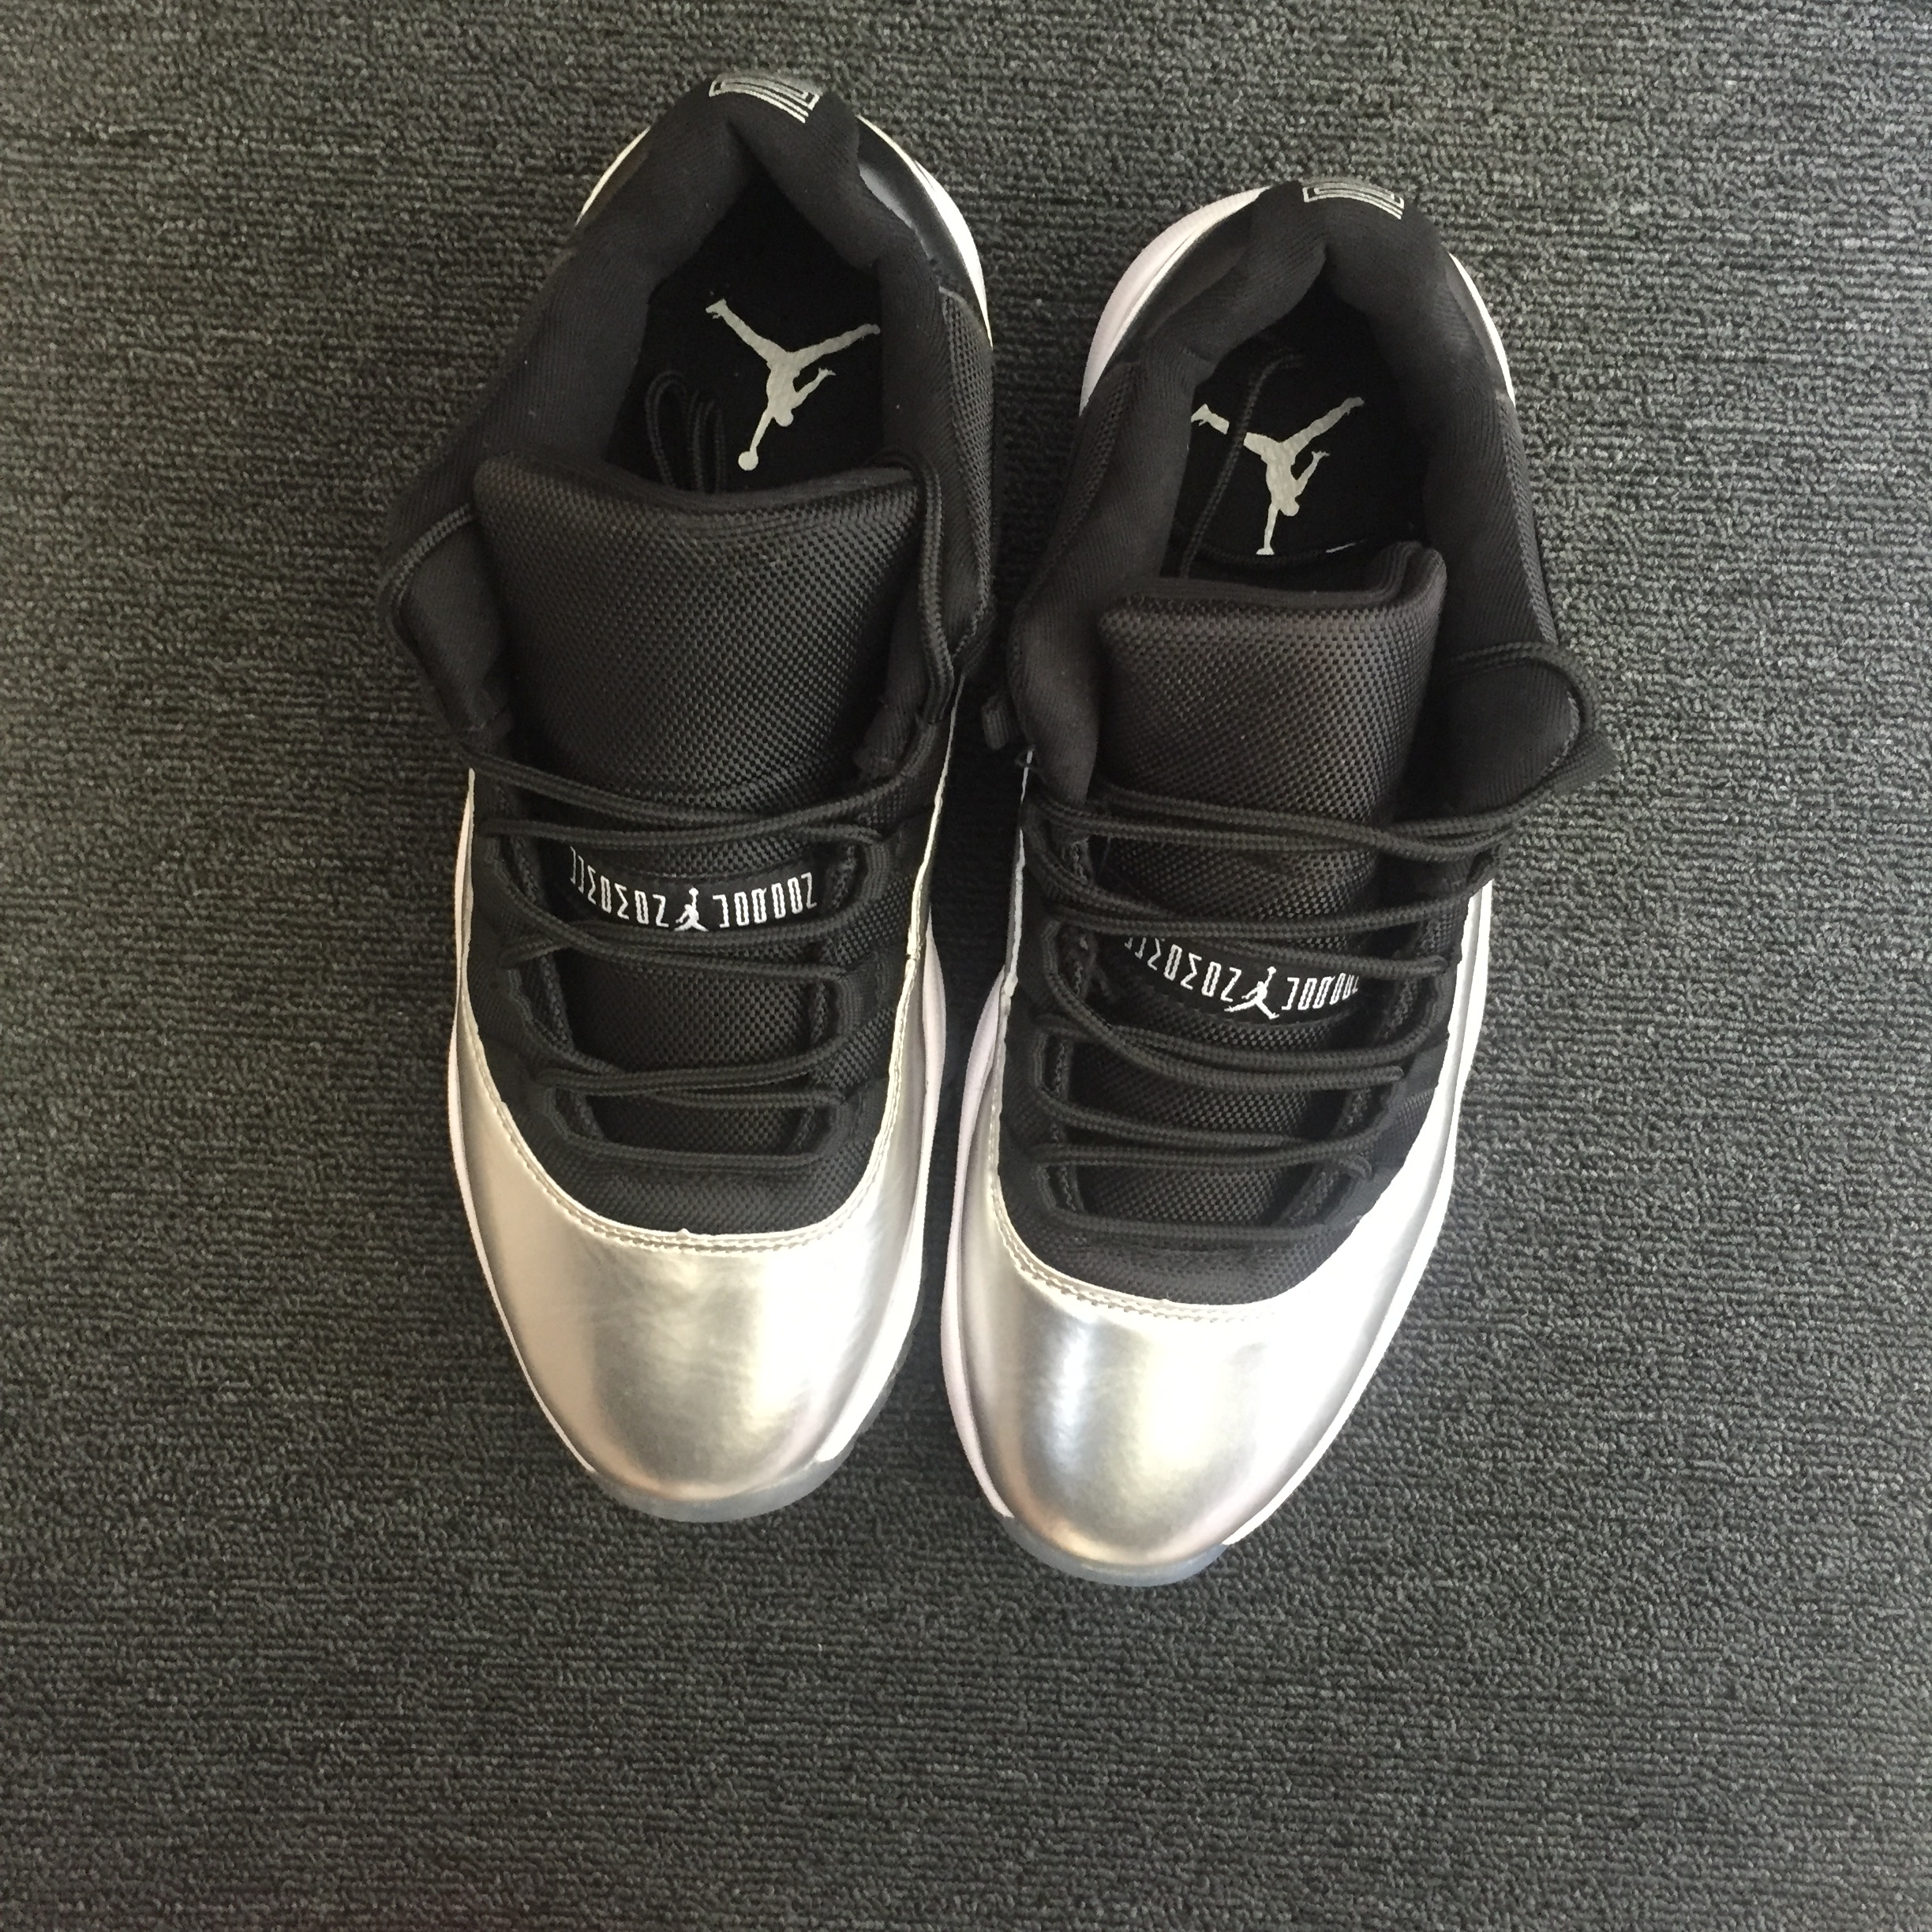 2017 Air Jordan 11 Low Black Silver Shoes